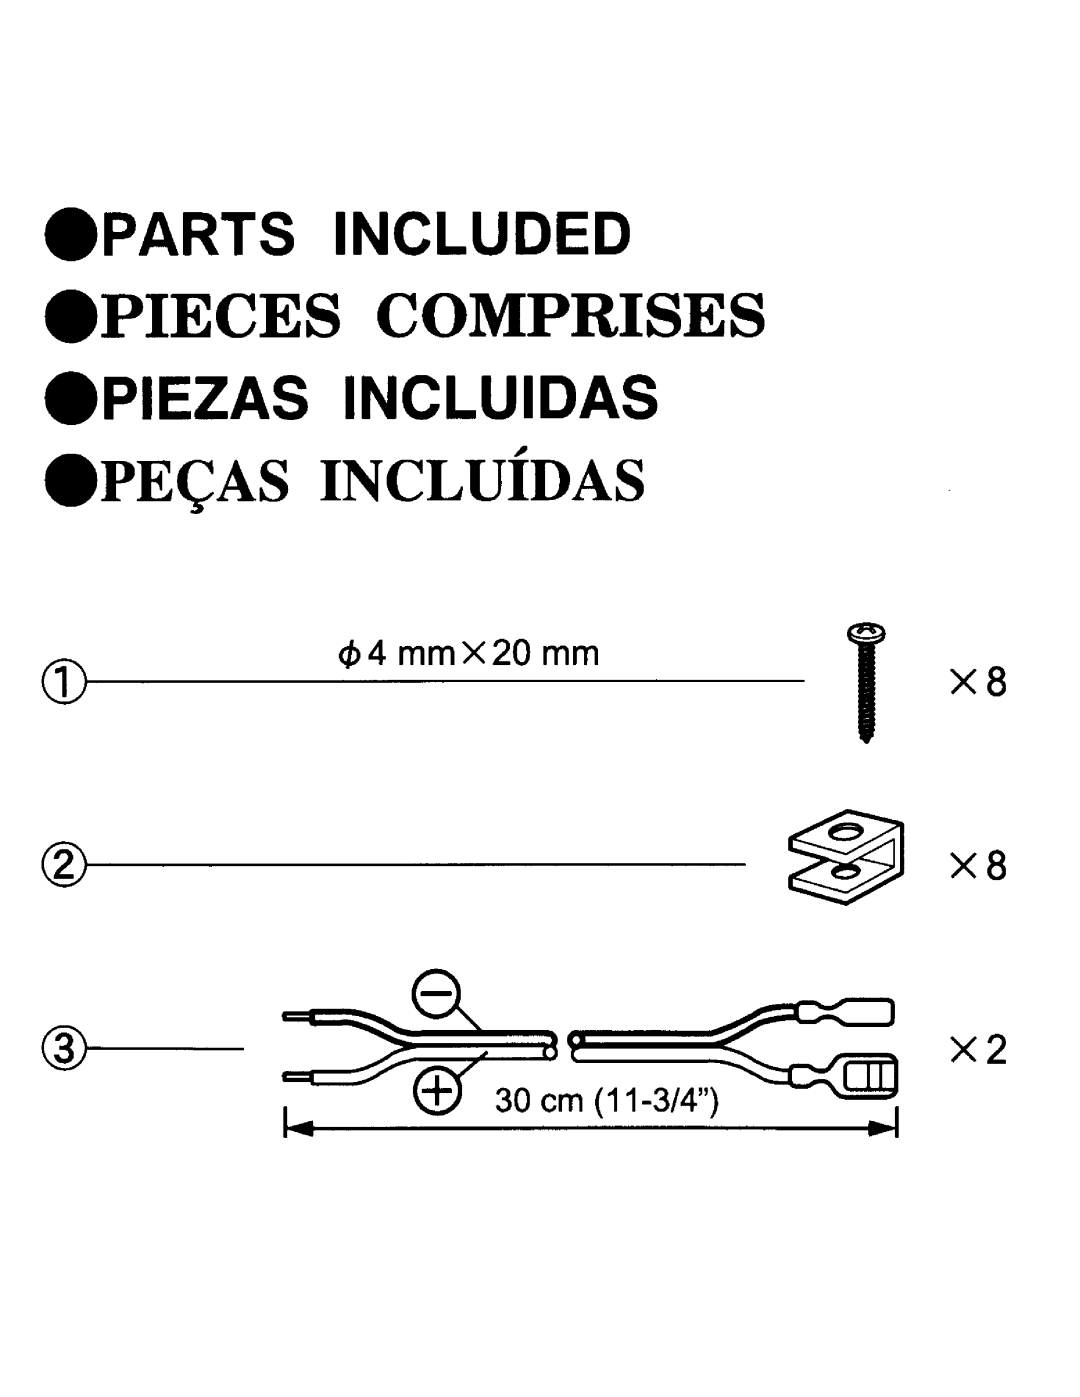 Pioneer TS-A1675R specifications Pieces Comprises, PEc AS INCLUiDAS, Parts Included, Piezas Incluidas, ~ xa, cb4 mmX20 mm 